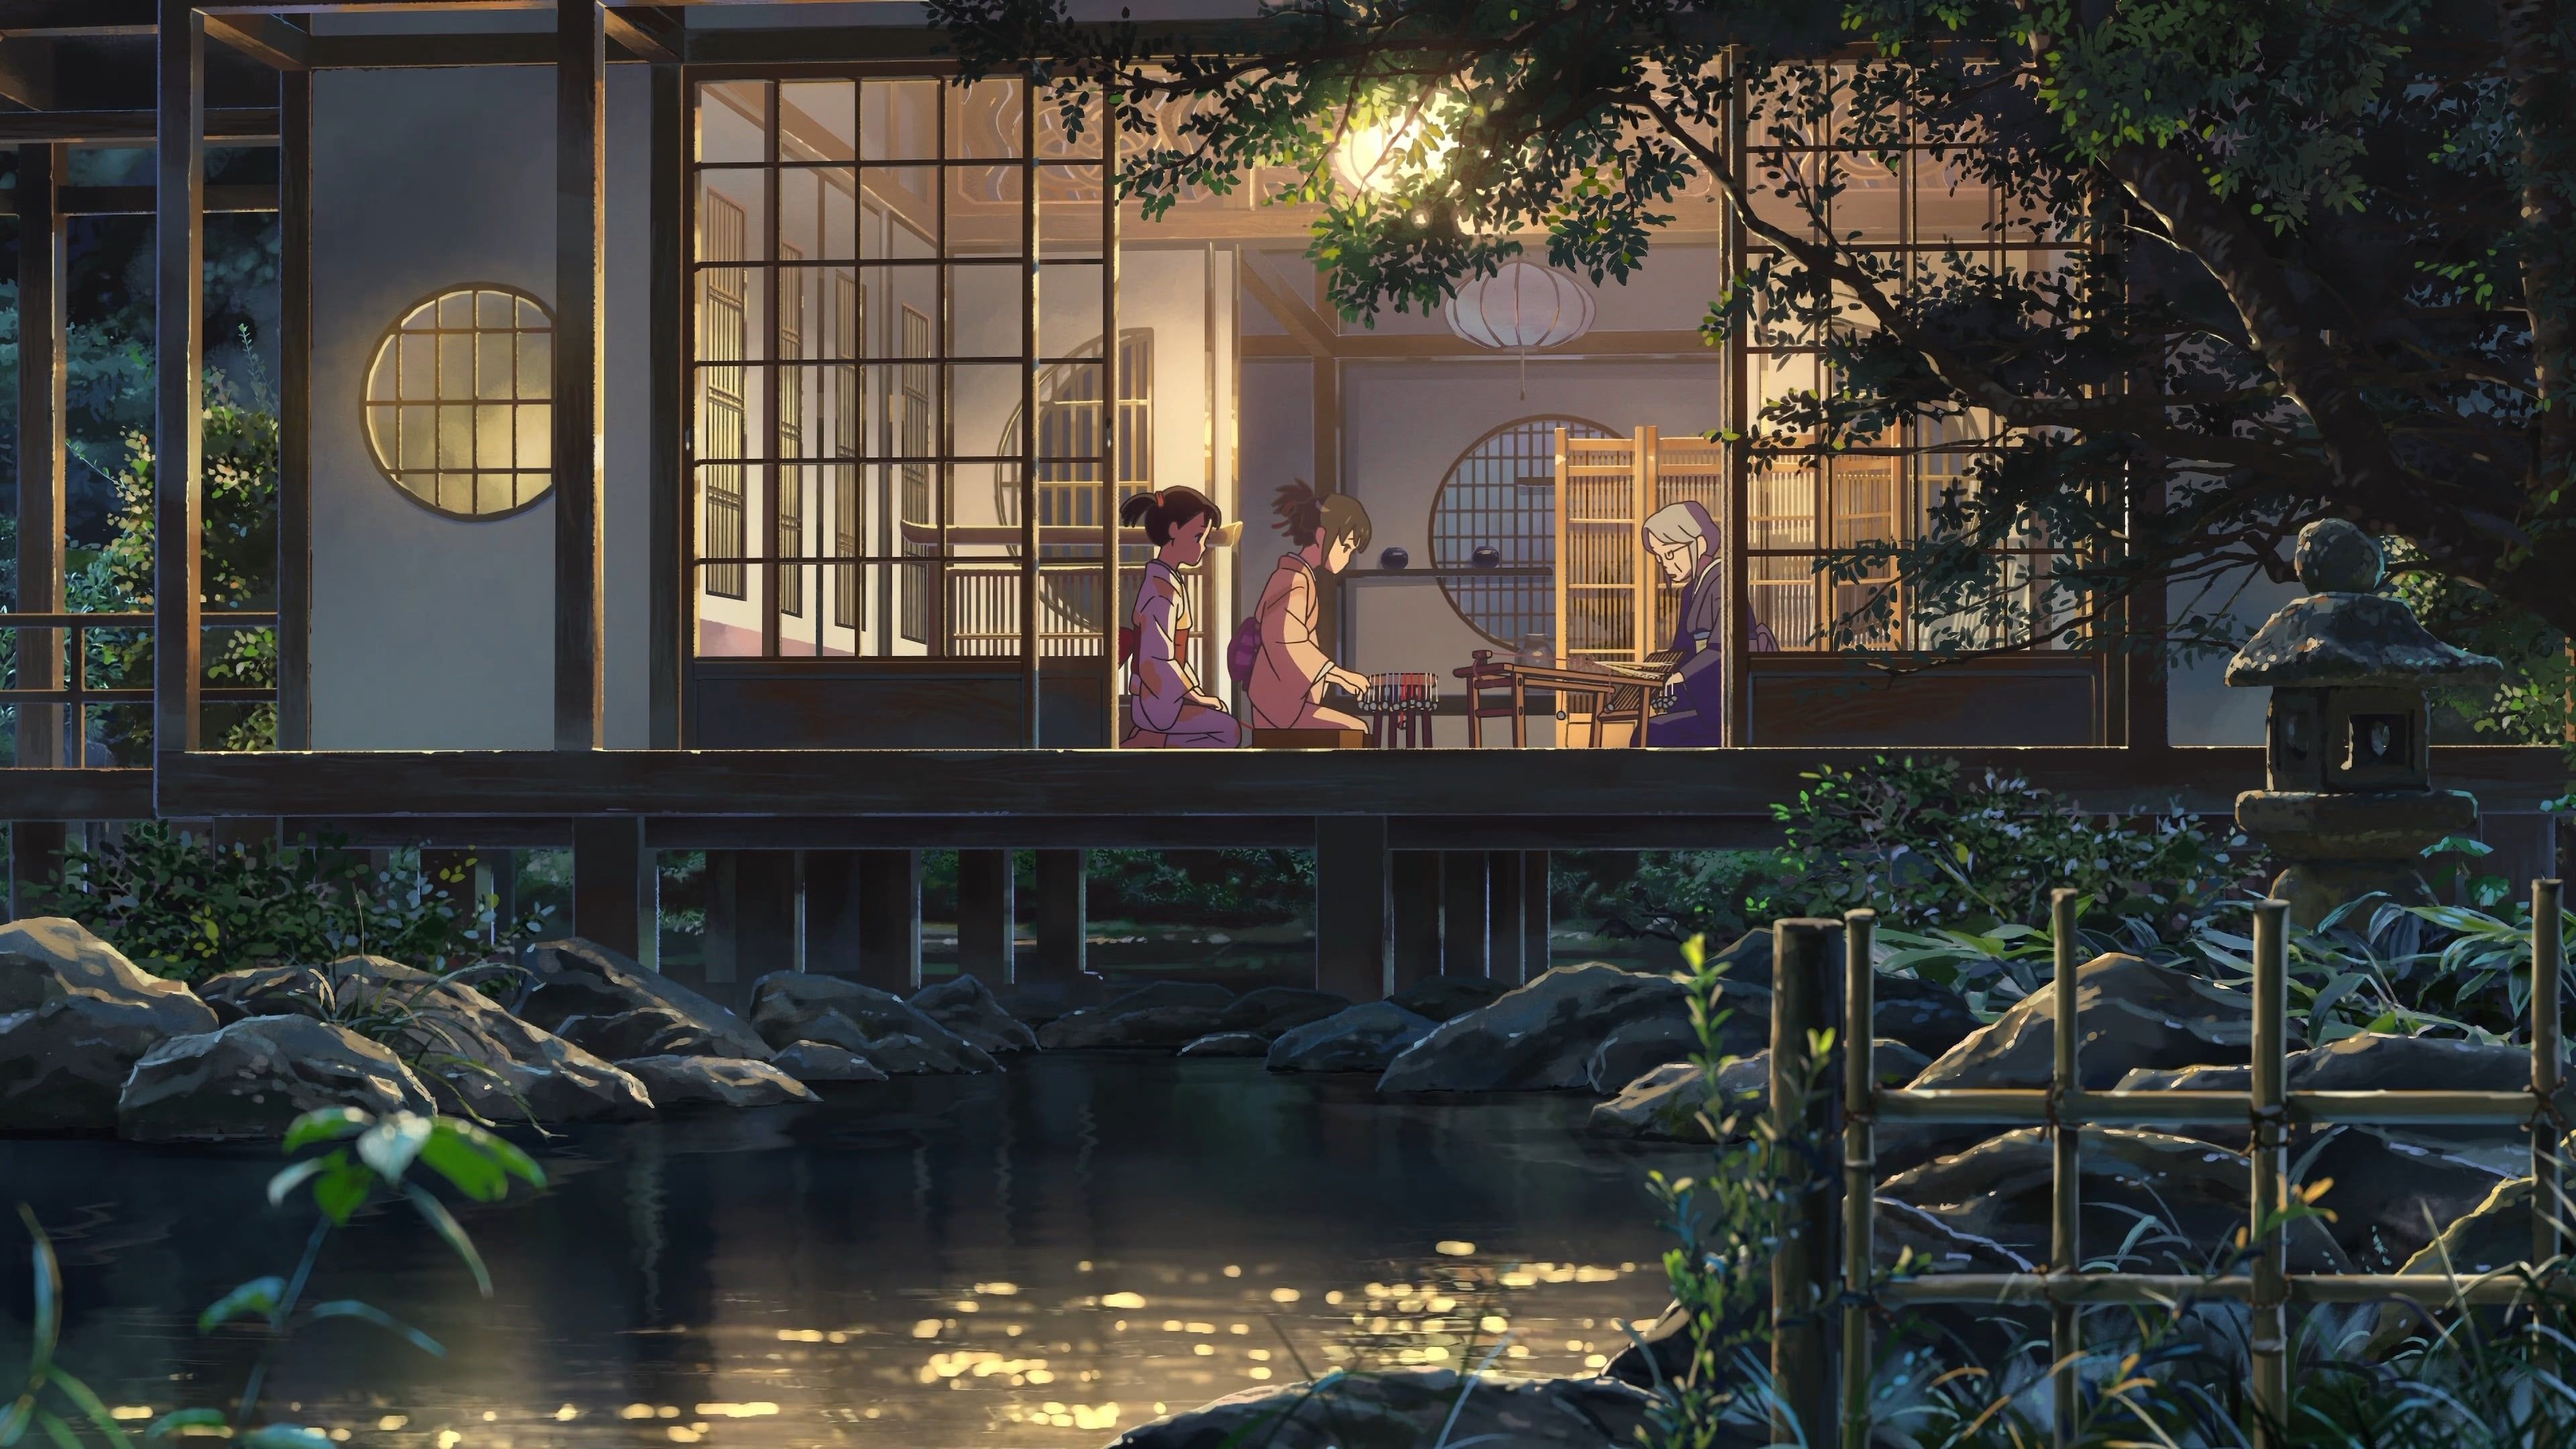 Wallpaper : anime girls, rain, flower garden, summer, house, balcony  2629x1706 - garett - 2185765 - HD Wallpapers - WallHere